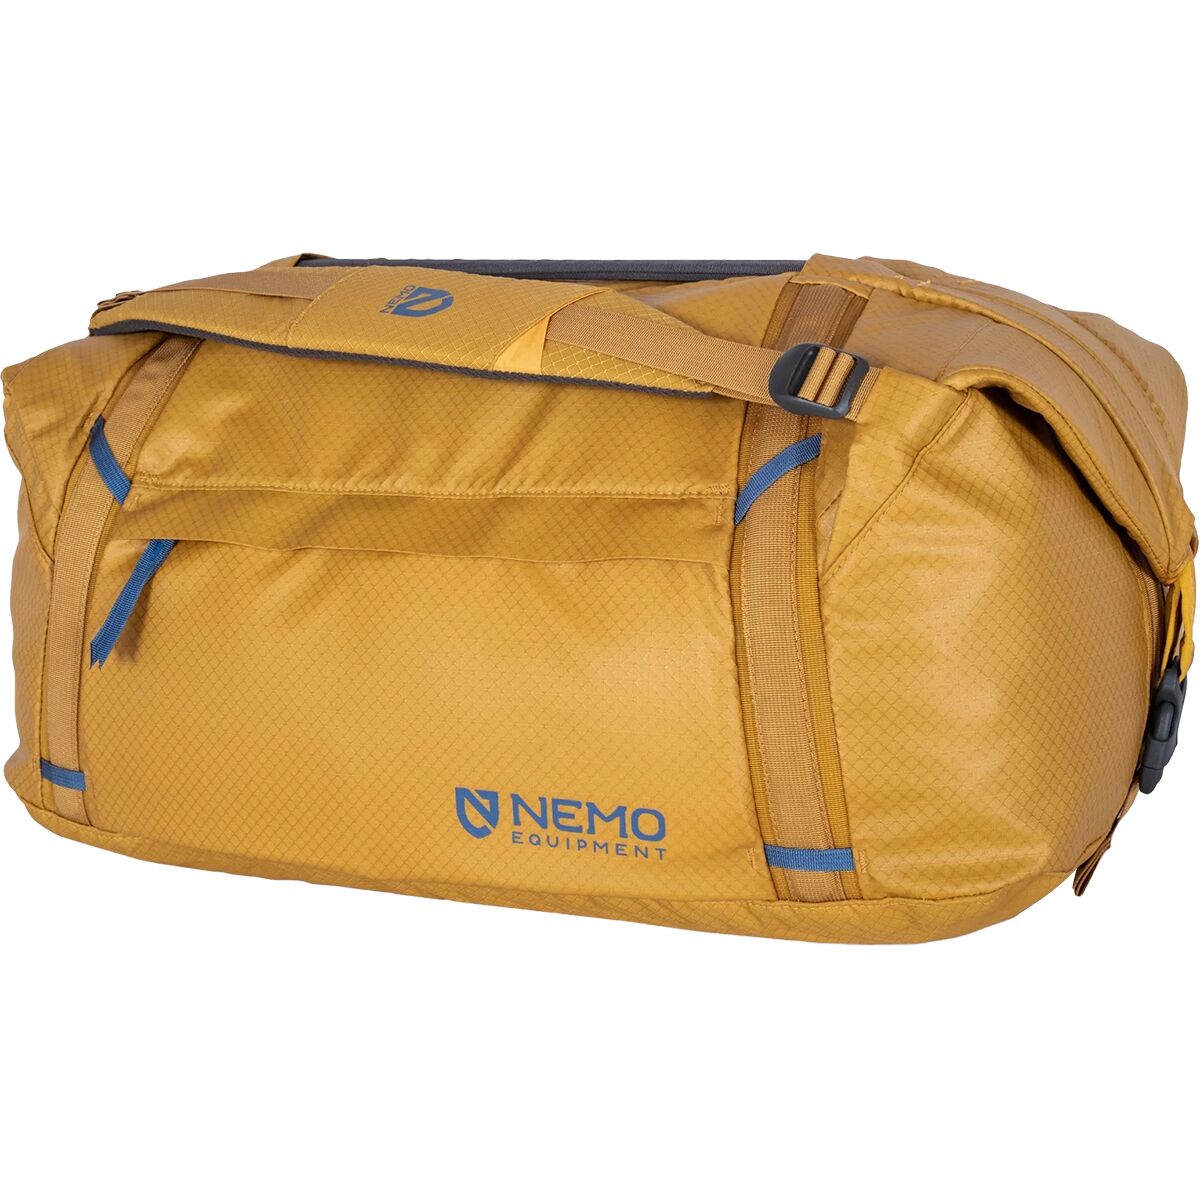 цена Двойная трансформируемая спортивная сумка объемом 55 л Nemo Equipment Inc., цвет chai